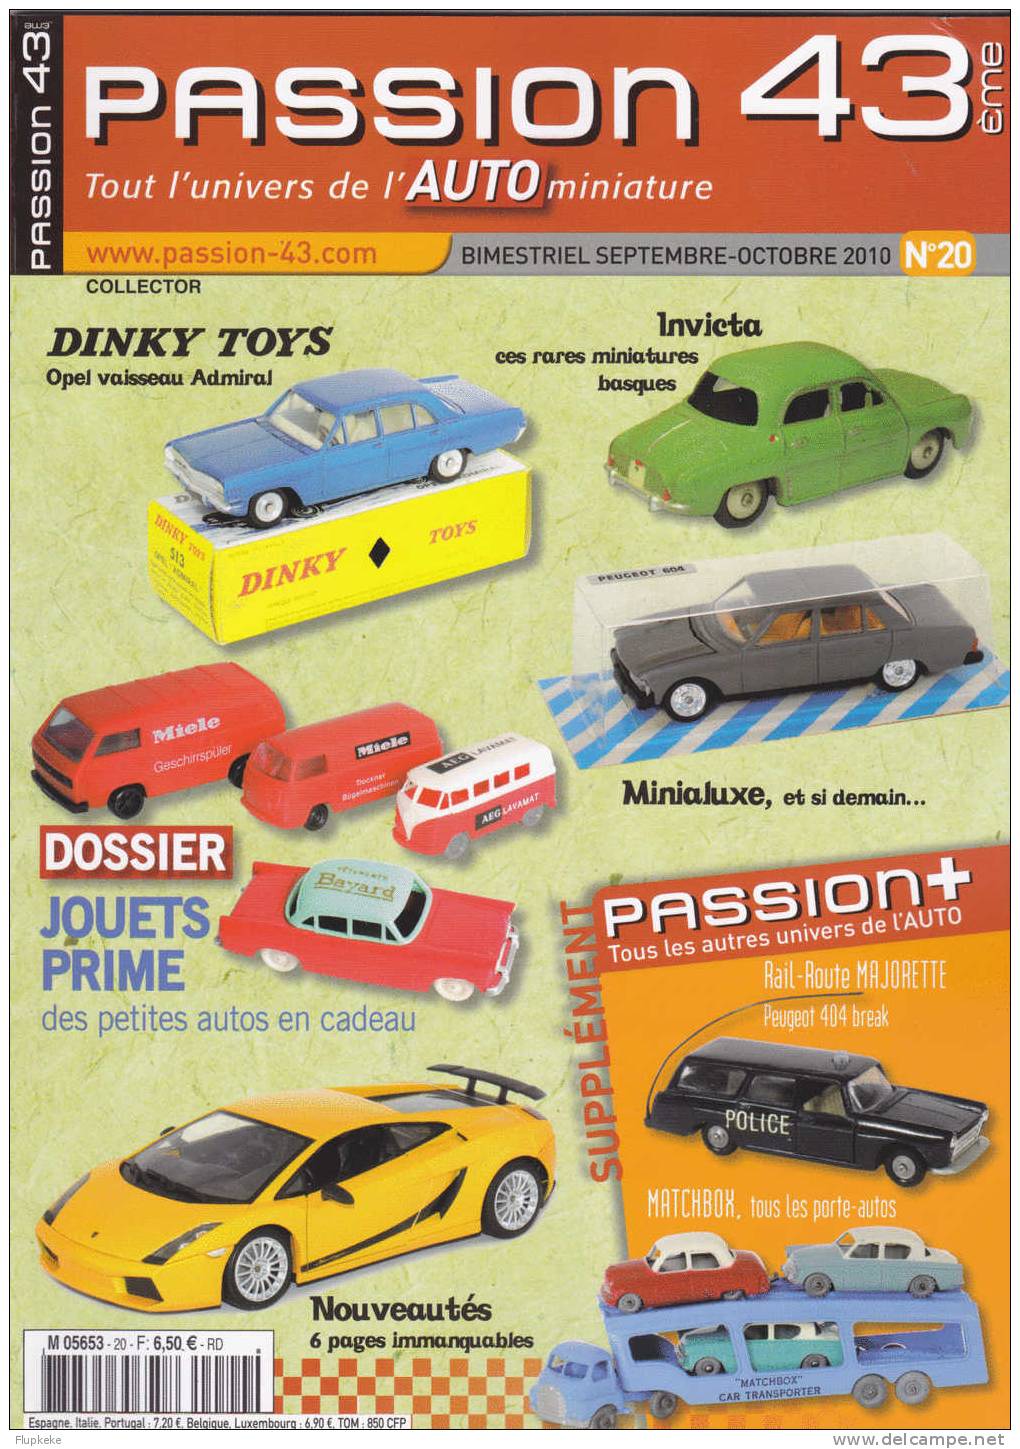 Passion 43 20 Septembre-octobre 2010 Dinky Toys Invicta Minialuxe Jouets Prime Des Petites Autos En Cadeau - Trödler & Sammler